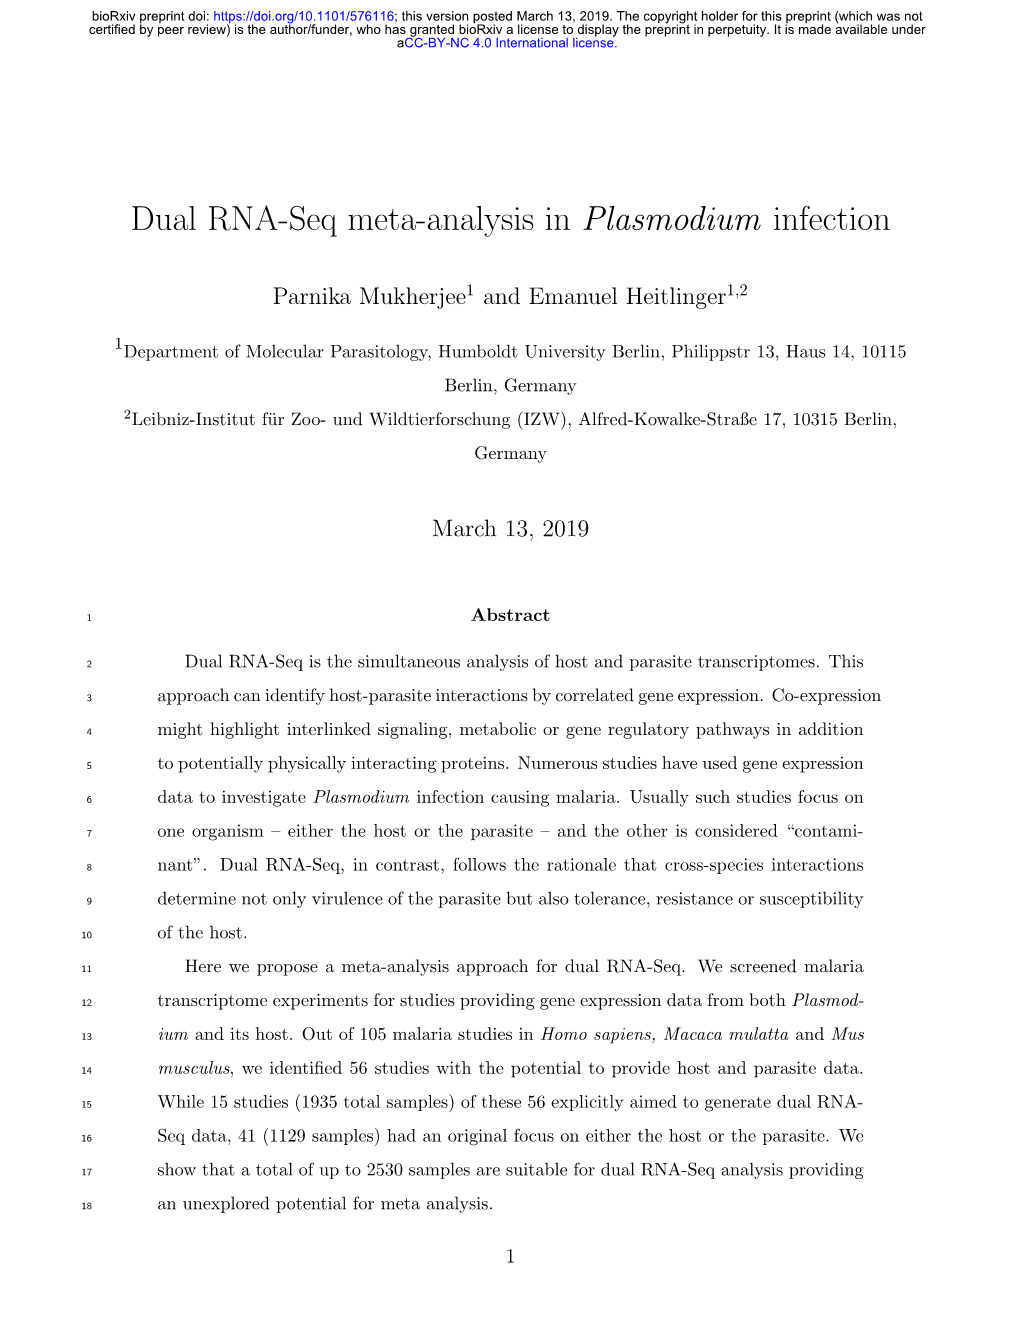 Dual RNA-Seq Meta-Analysis in Plasmodium Infection